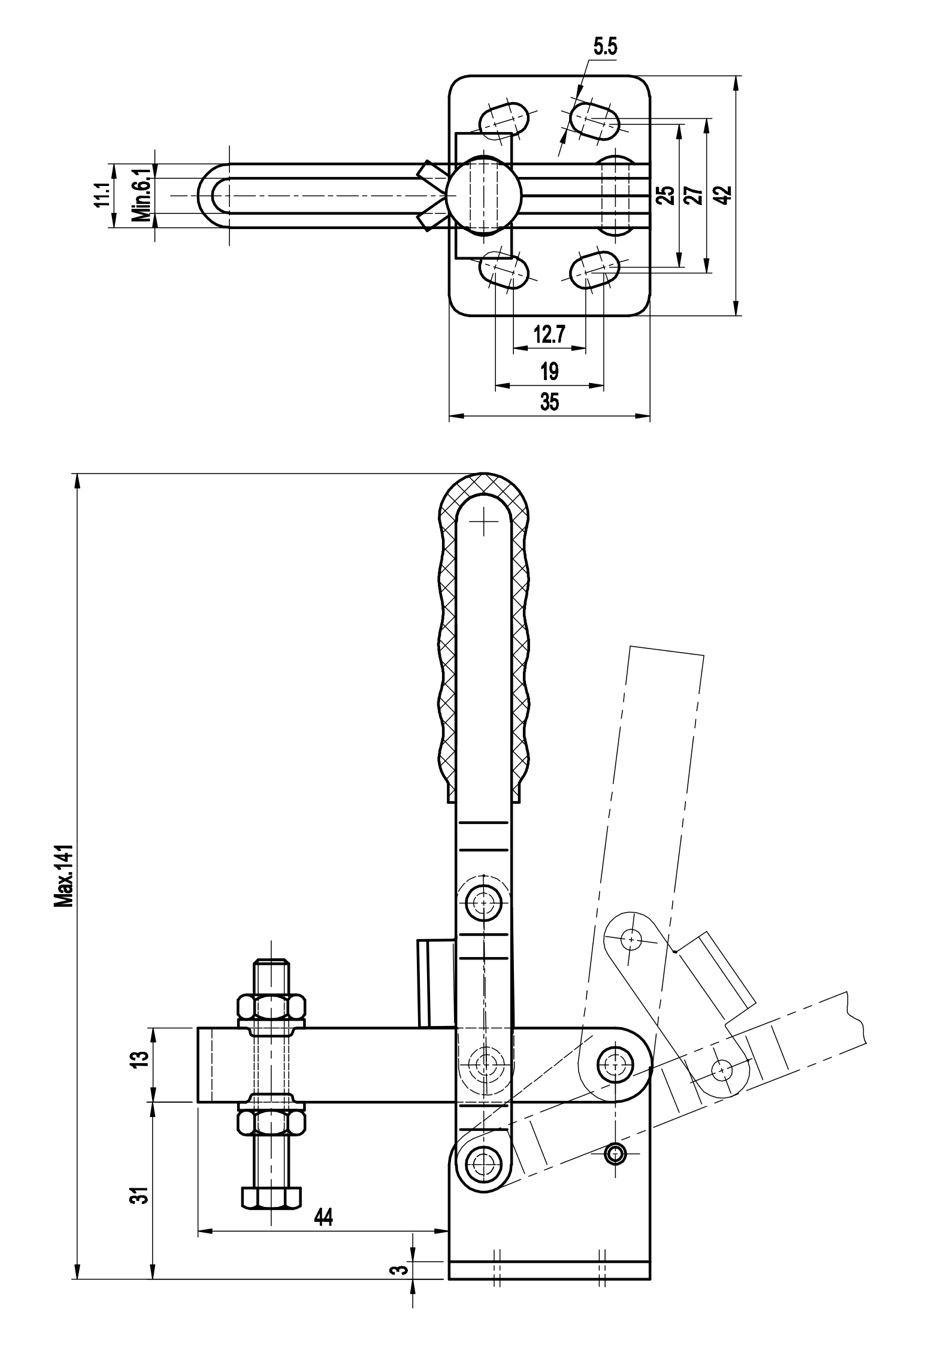 DST-11002-B Technische Zeichnung Senkrechtspanner-Vertikalspanner mit waagrechtem Fuss, verstellbare Andrückschraube 800N